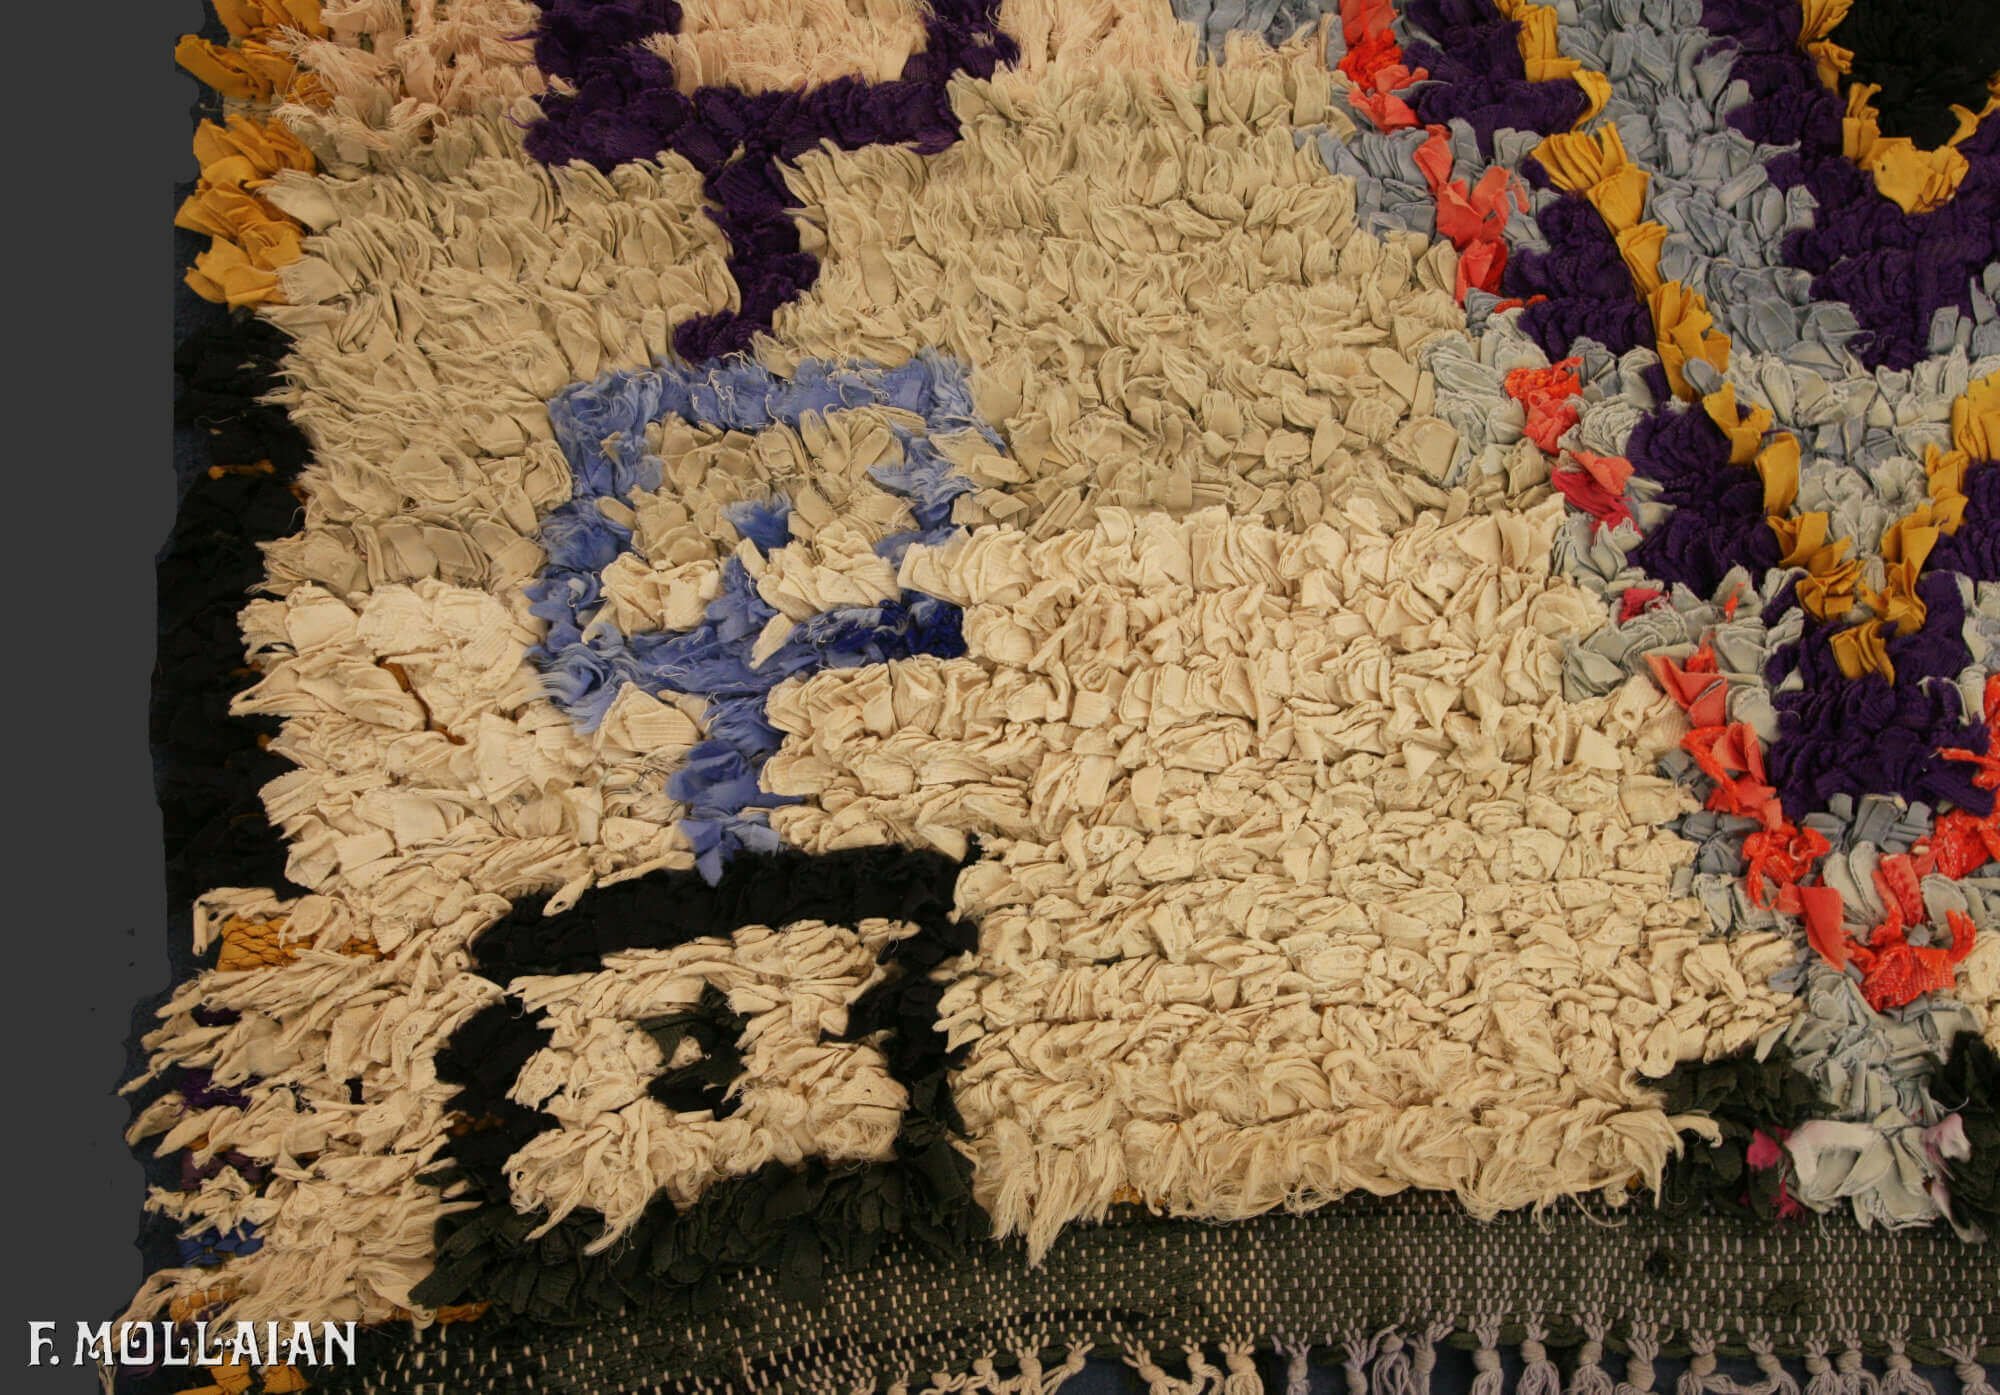 Teppich Marokkaner Semi-Antiker n°:29179710